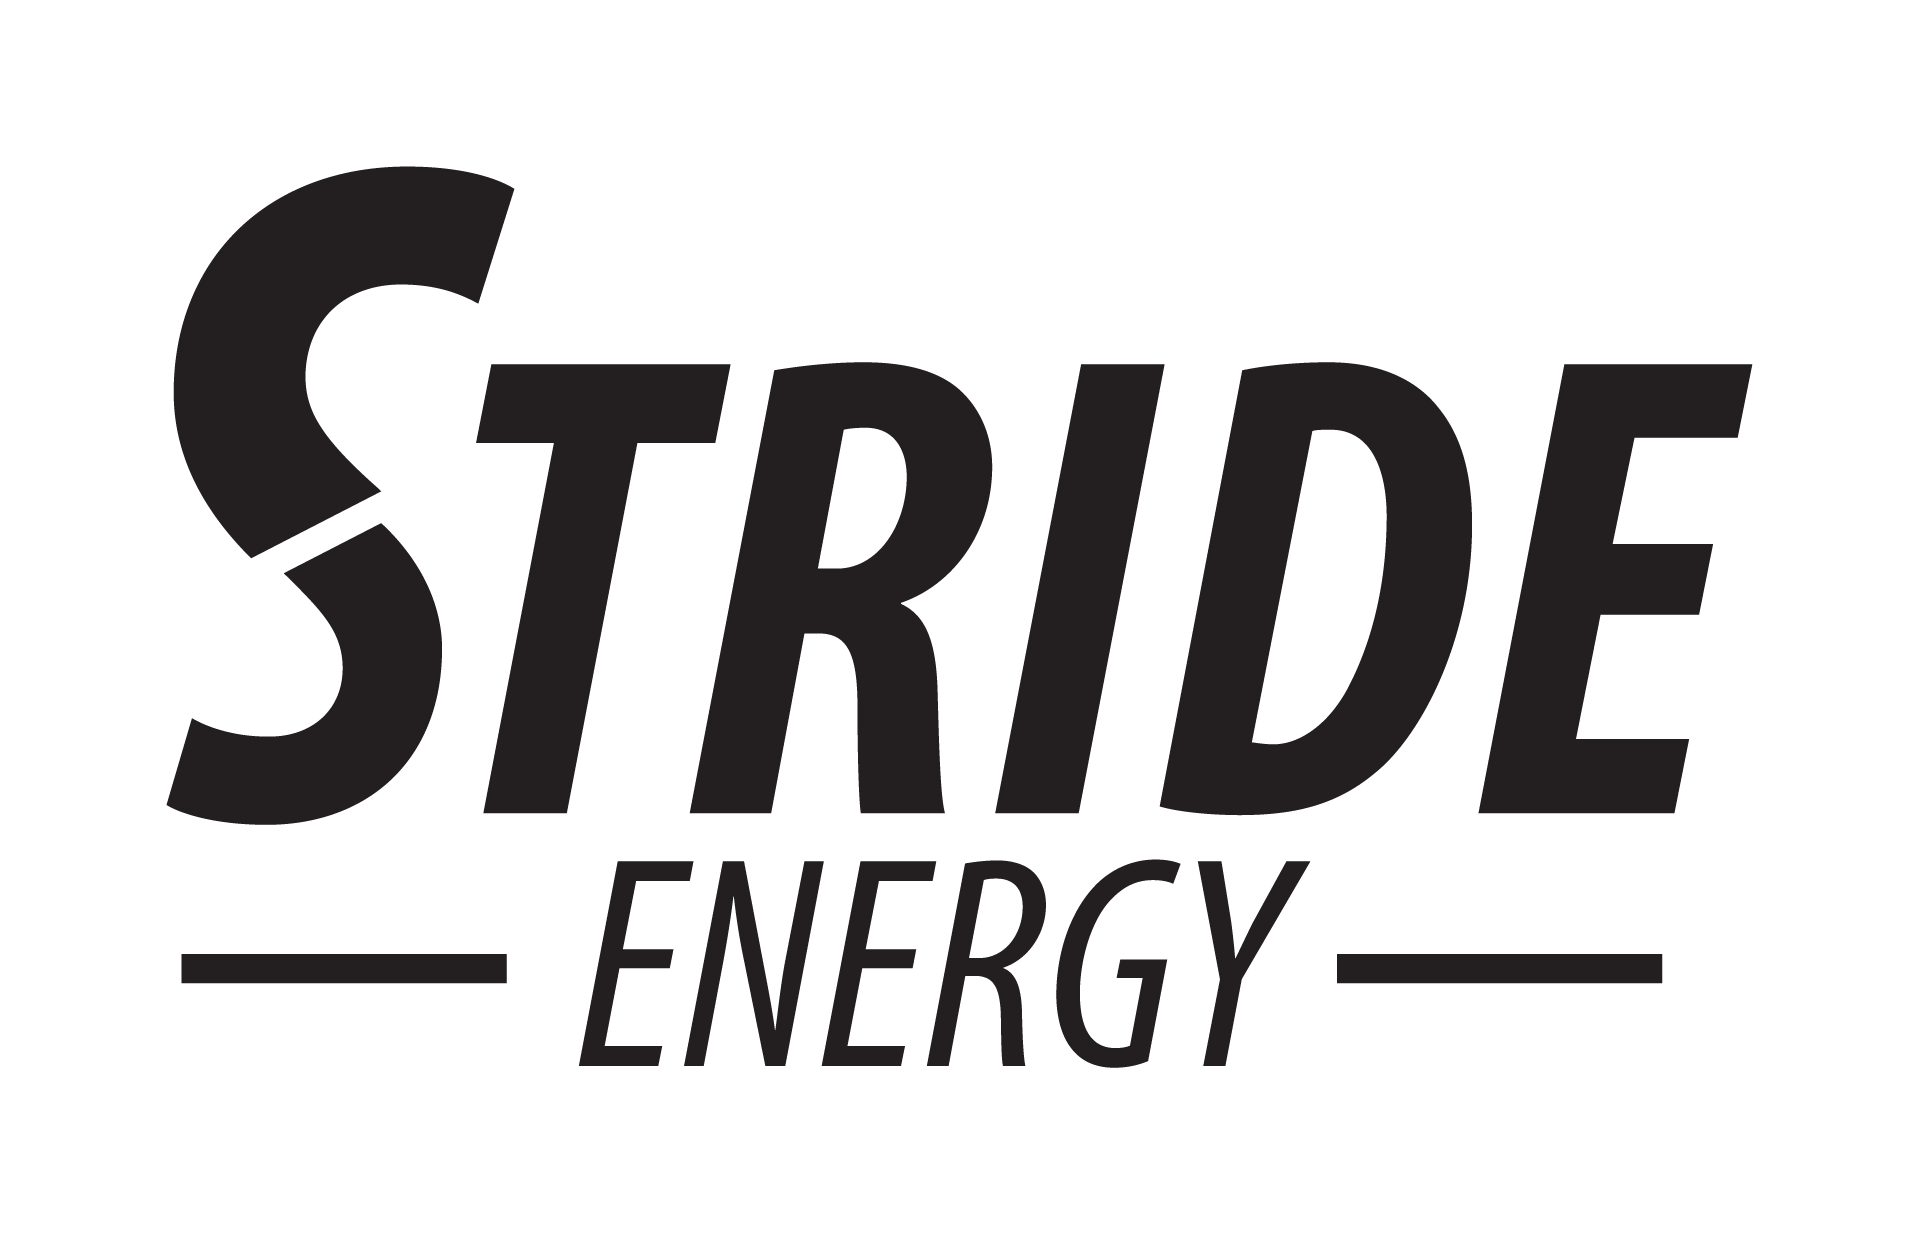 Stride Energy